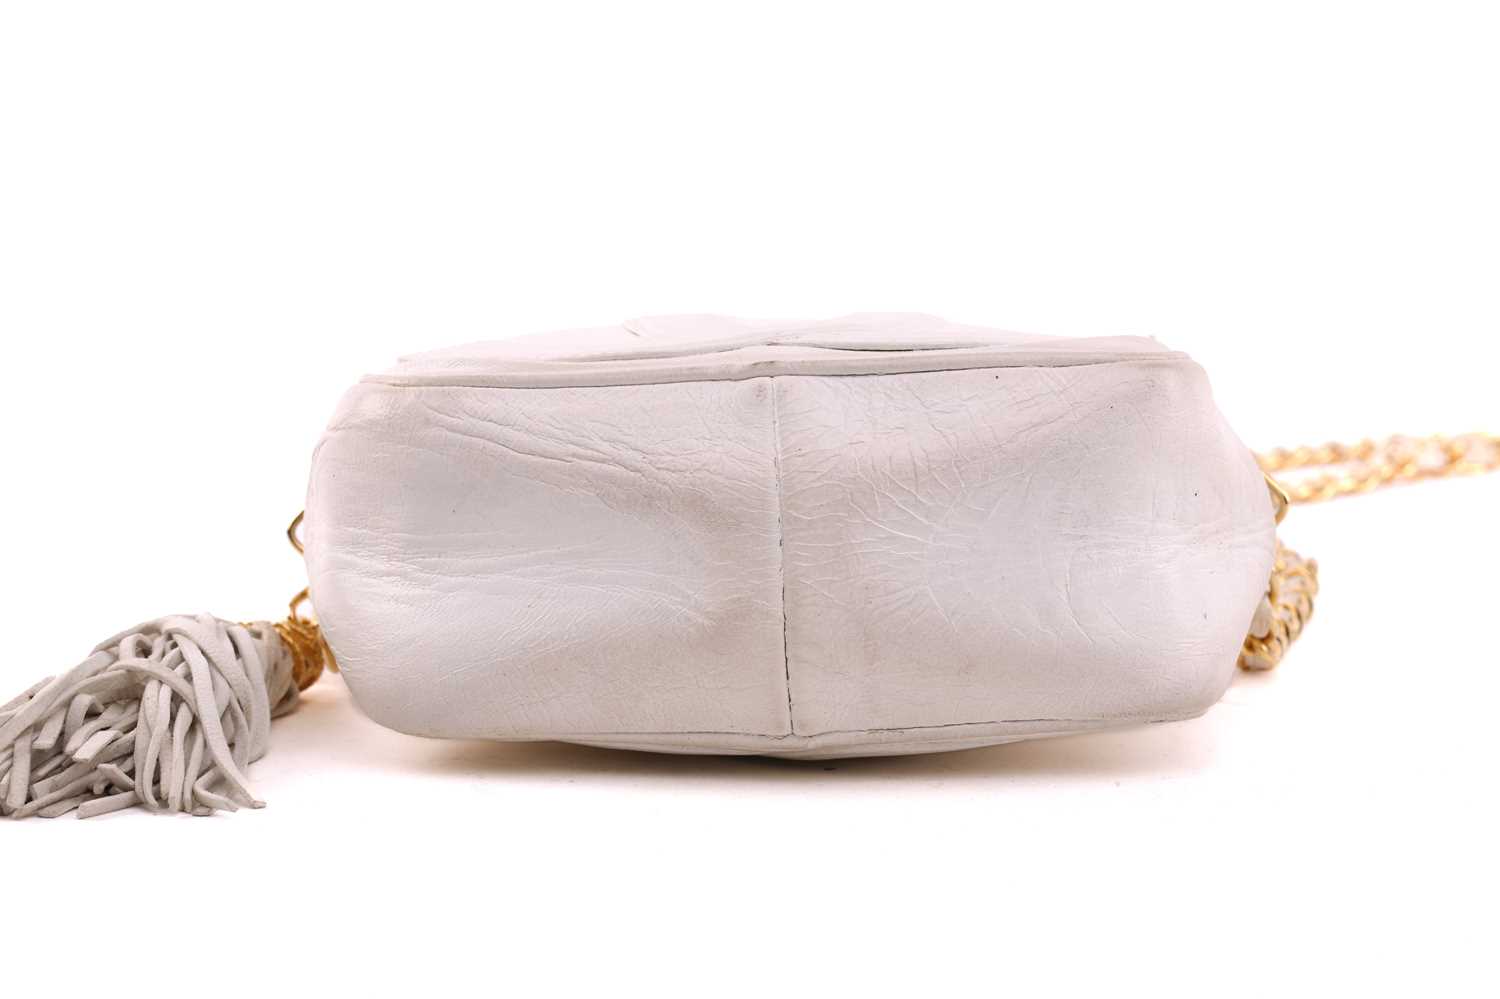 Chanel - a mini camera bag in white leather, circa 1986, interlocking 'CC' logo appliqué on the - Image 7 of 9